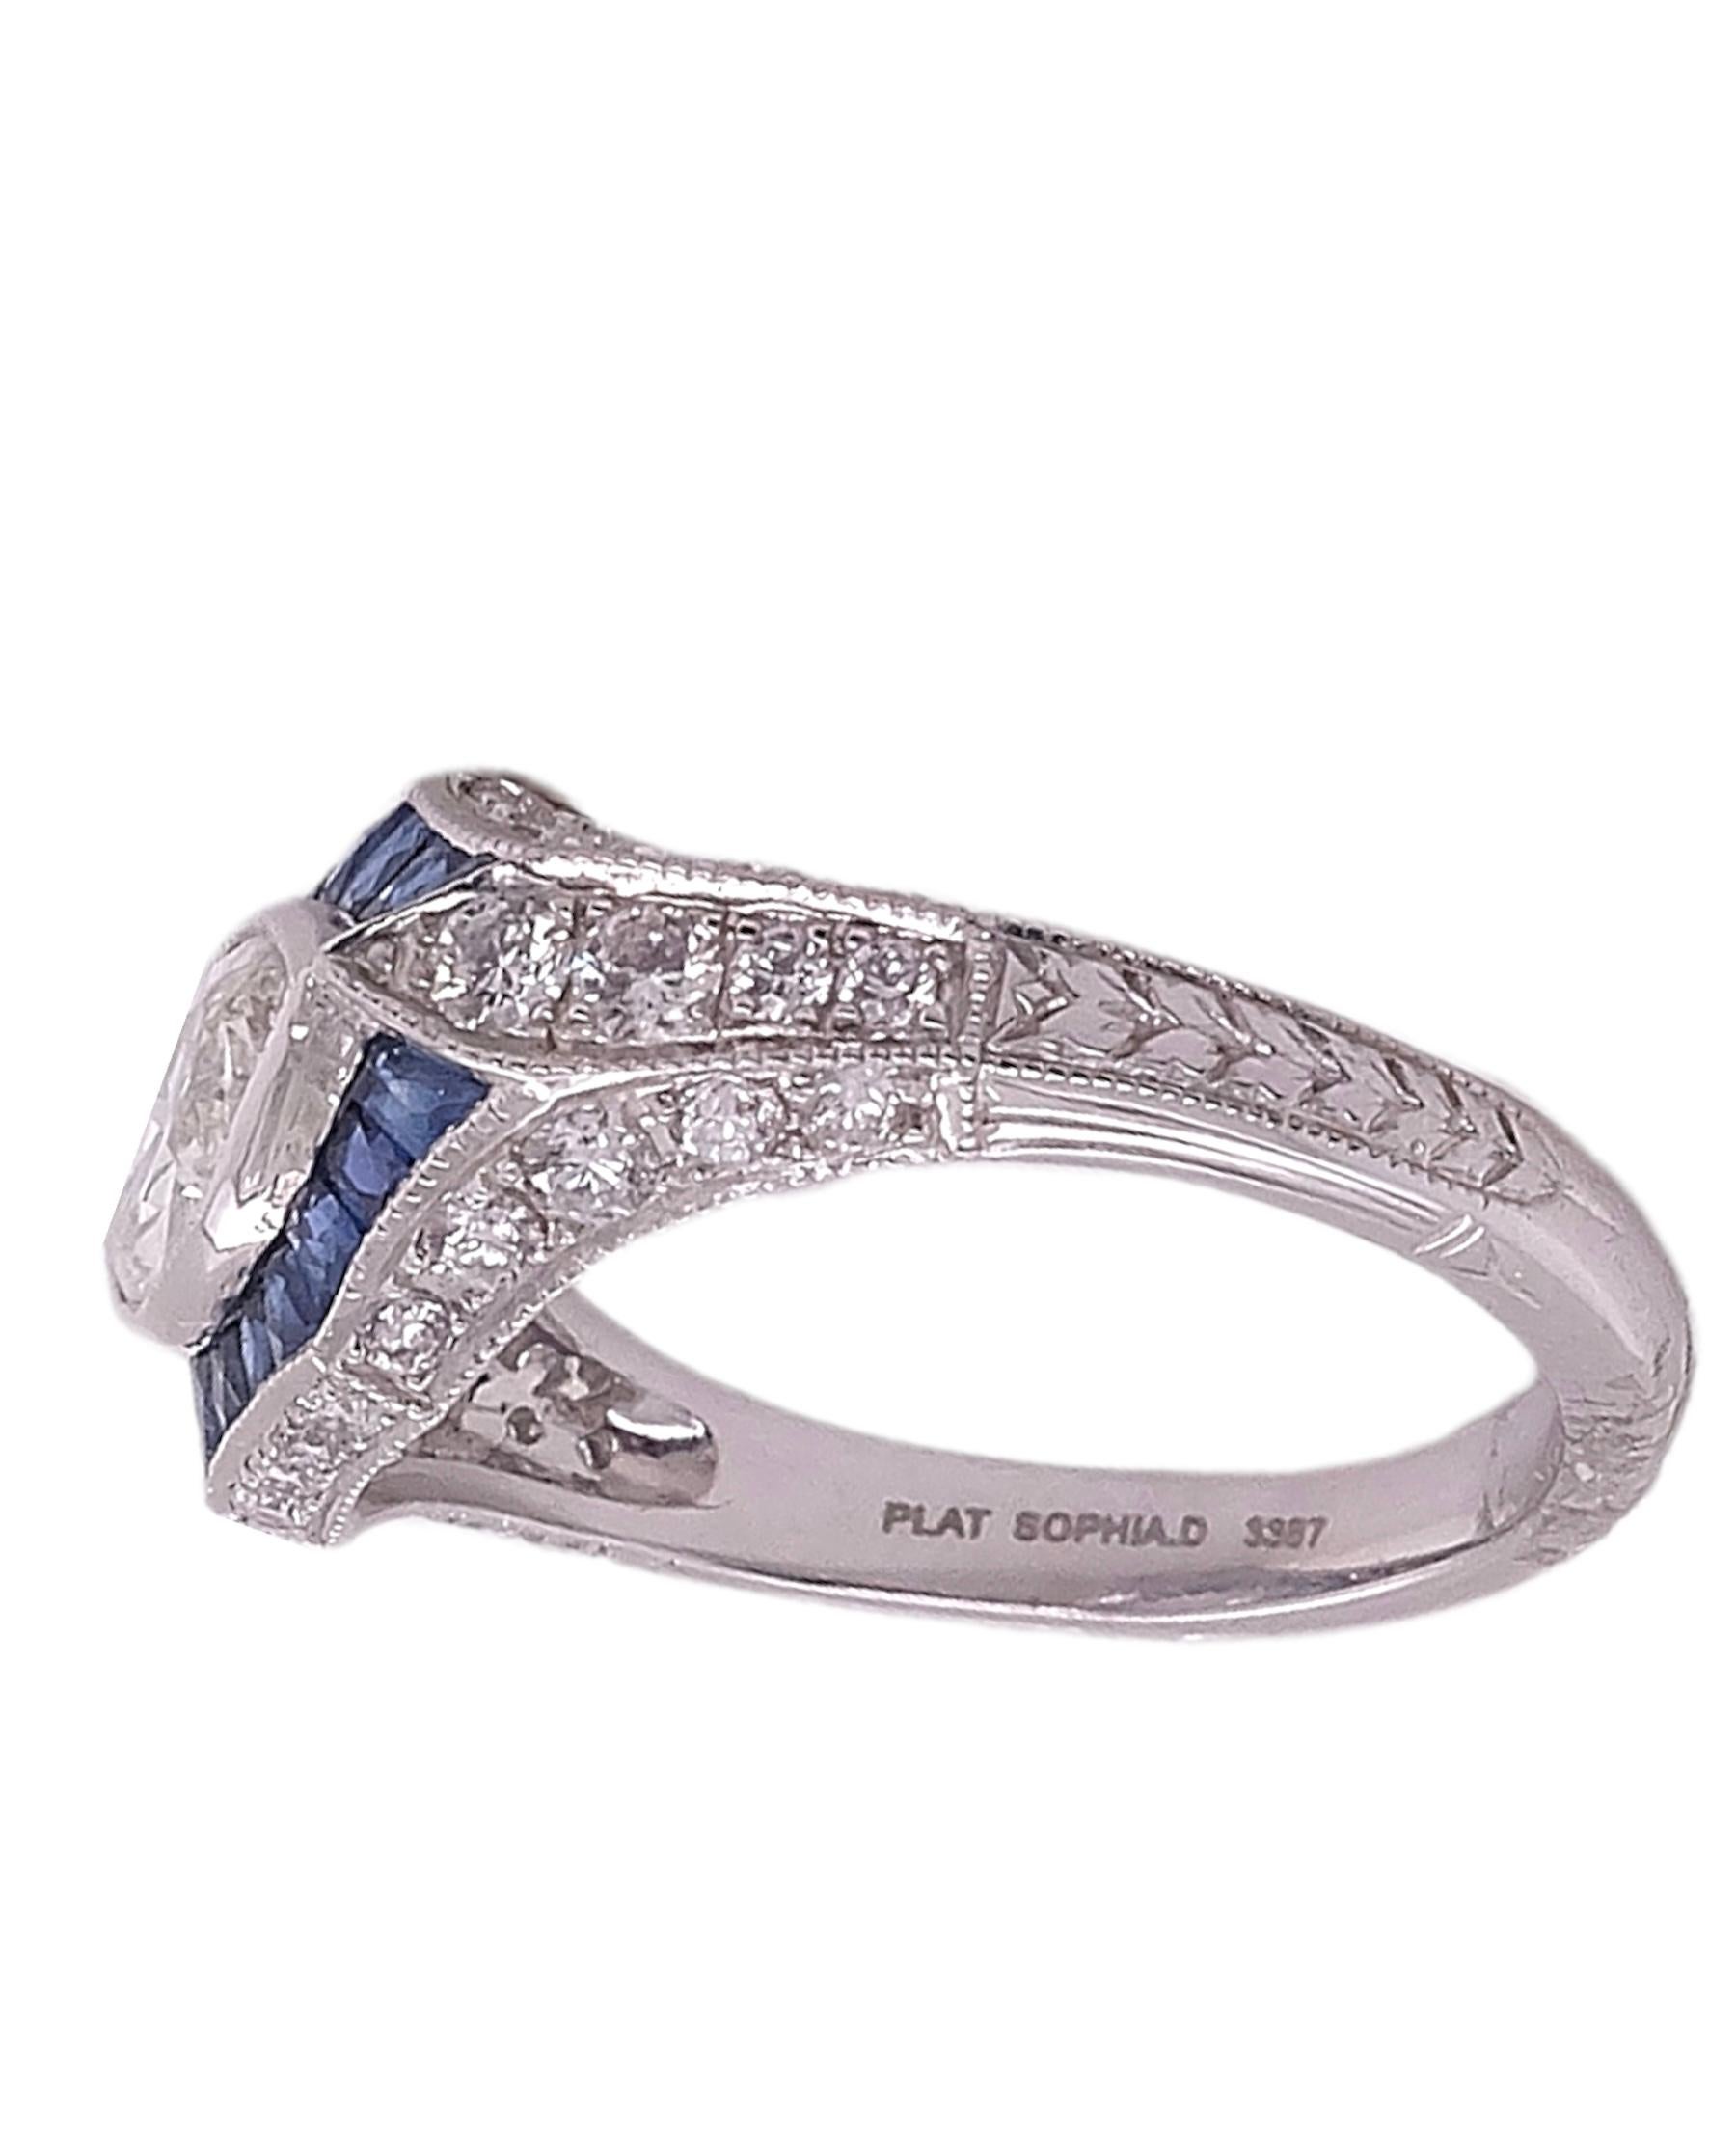 Wunderschön gestalteter Art Deco Ring von Sophia D mit einem 1,02 Marquise geschliffenen Mittelstein, ergänzt mit 0,56 Karat blauen Saphiren und 0,61 Karat kleinen runden Diamanten. Der Ring ist in Platin gefasst und hat die Größe 6 1/2. Es ist für